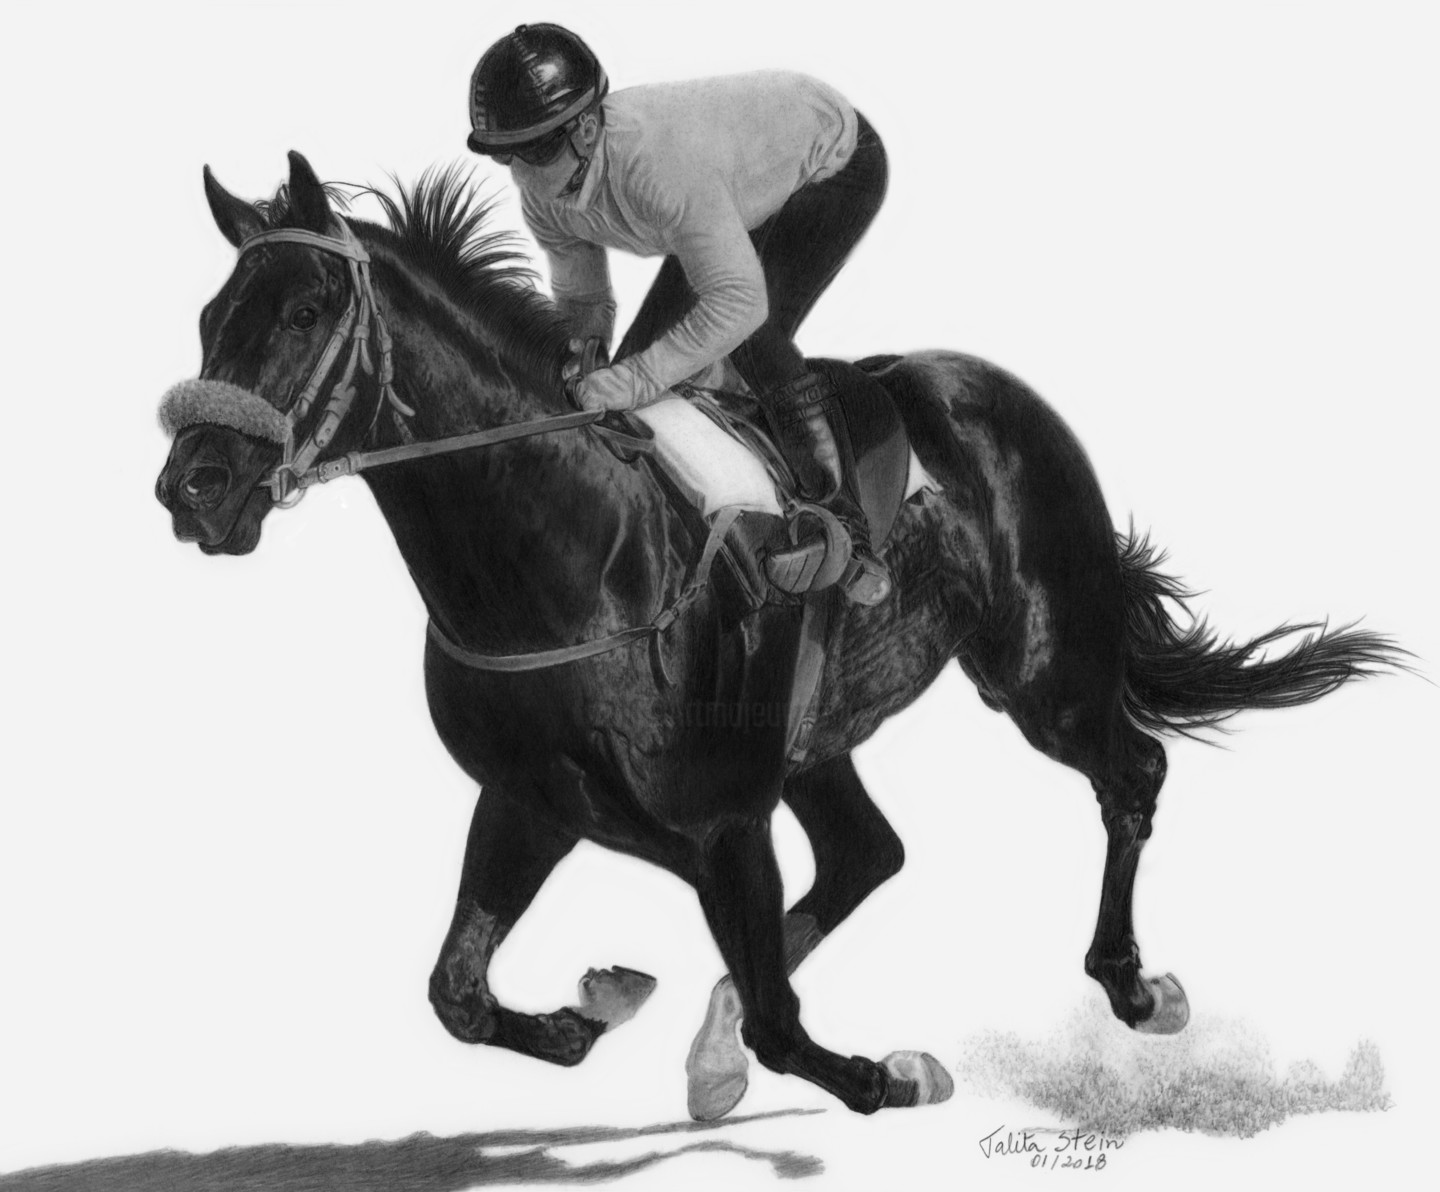 Gráfico digital: um desenho realista de um cavalo de corrida